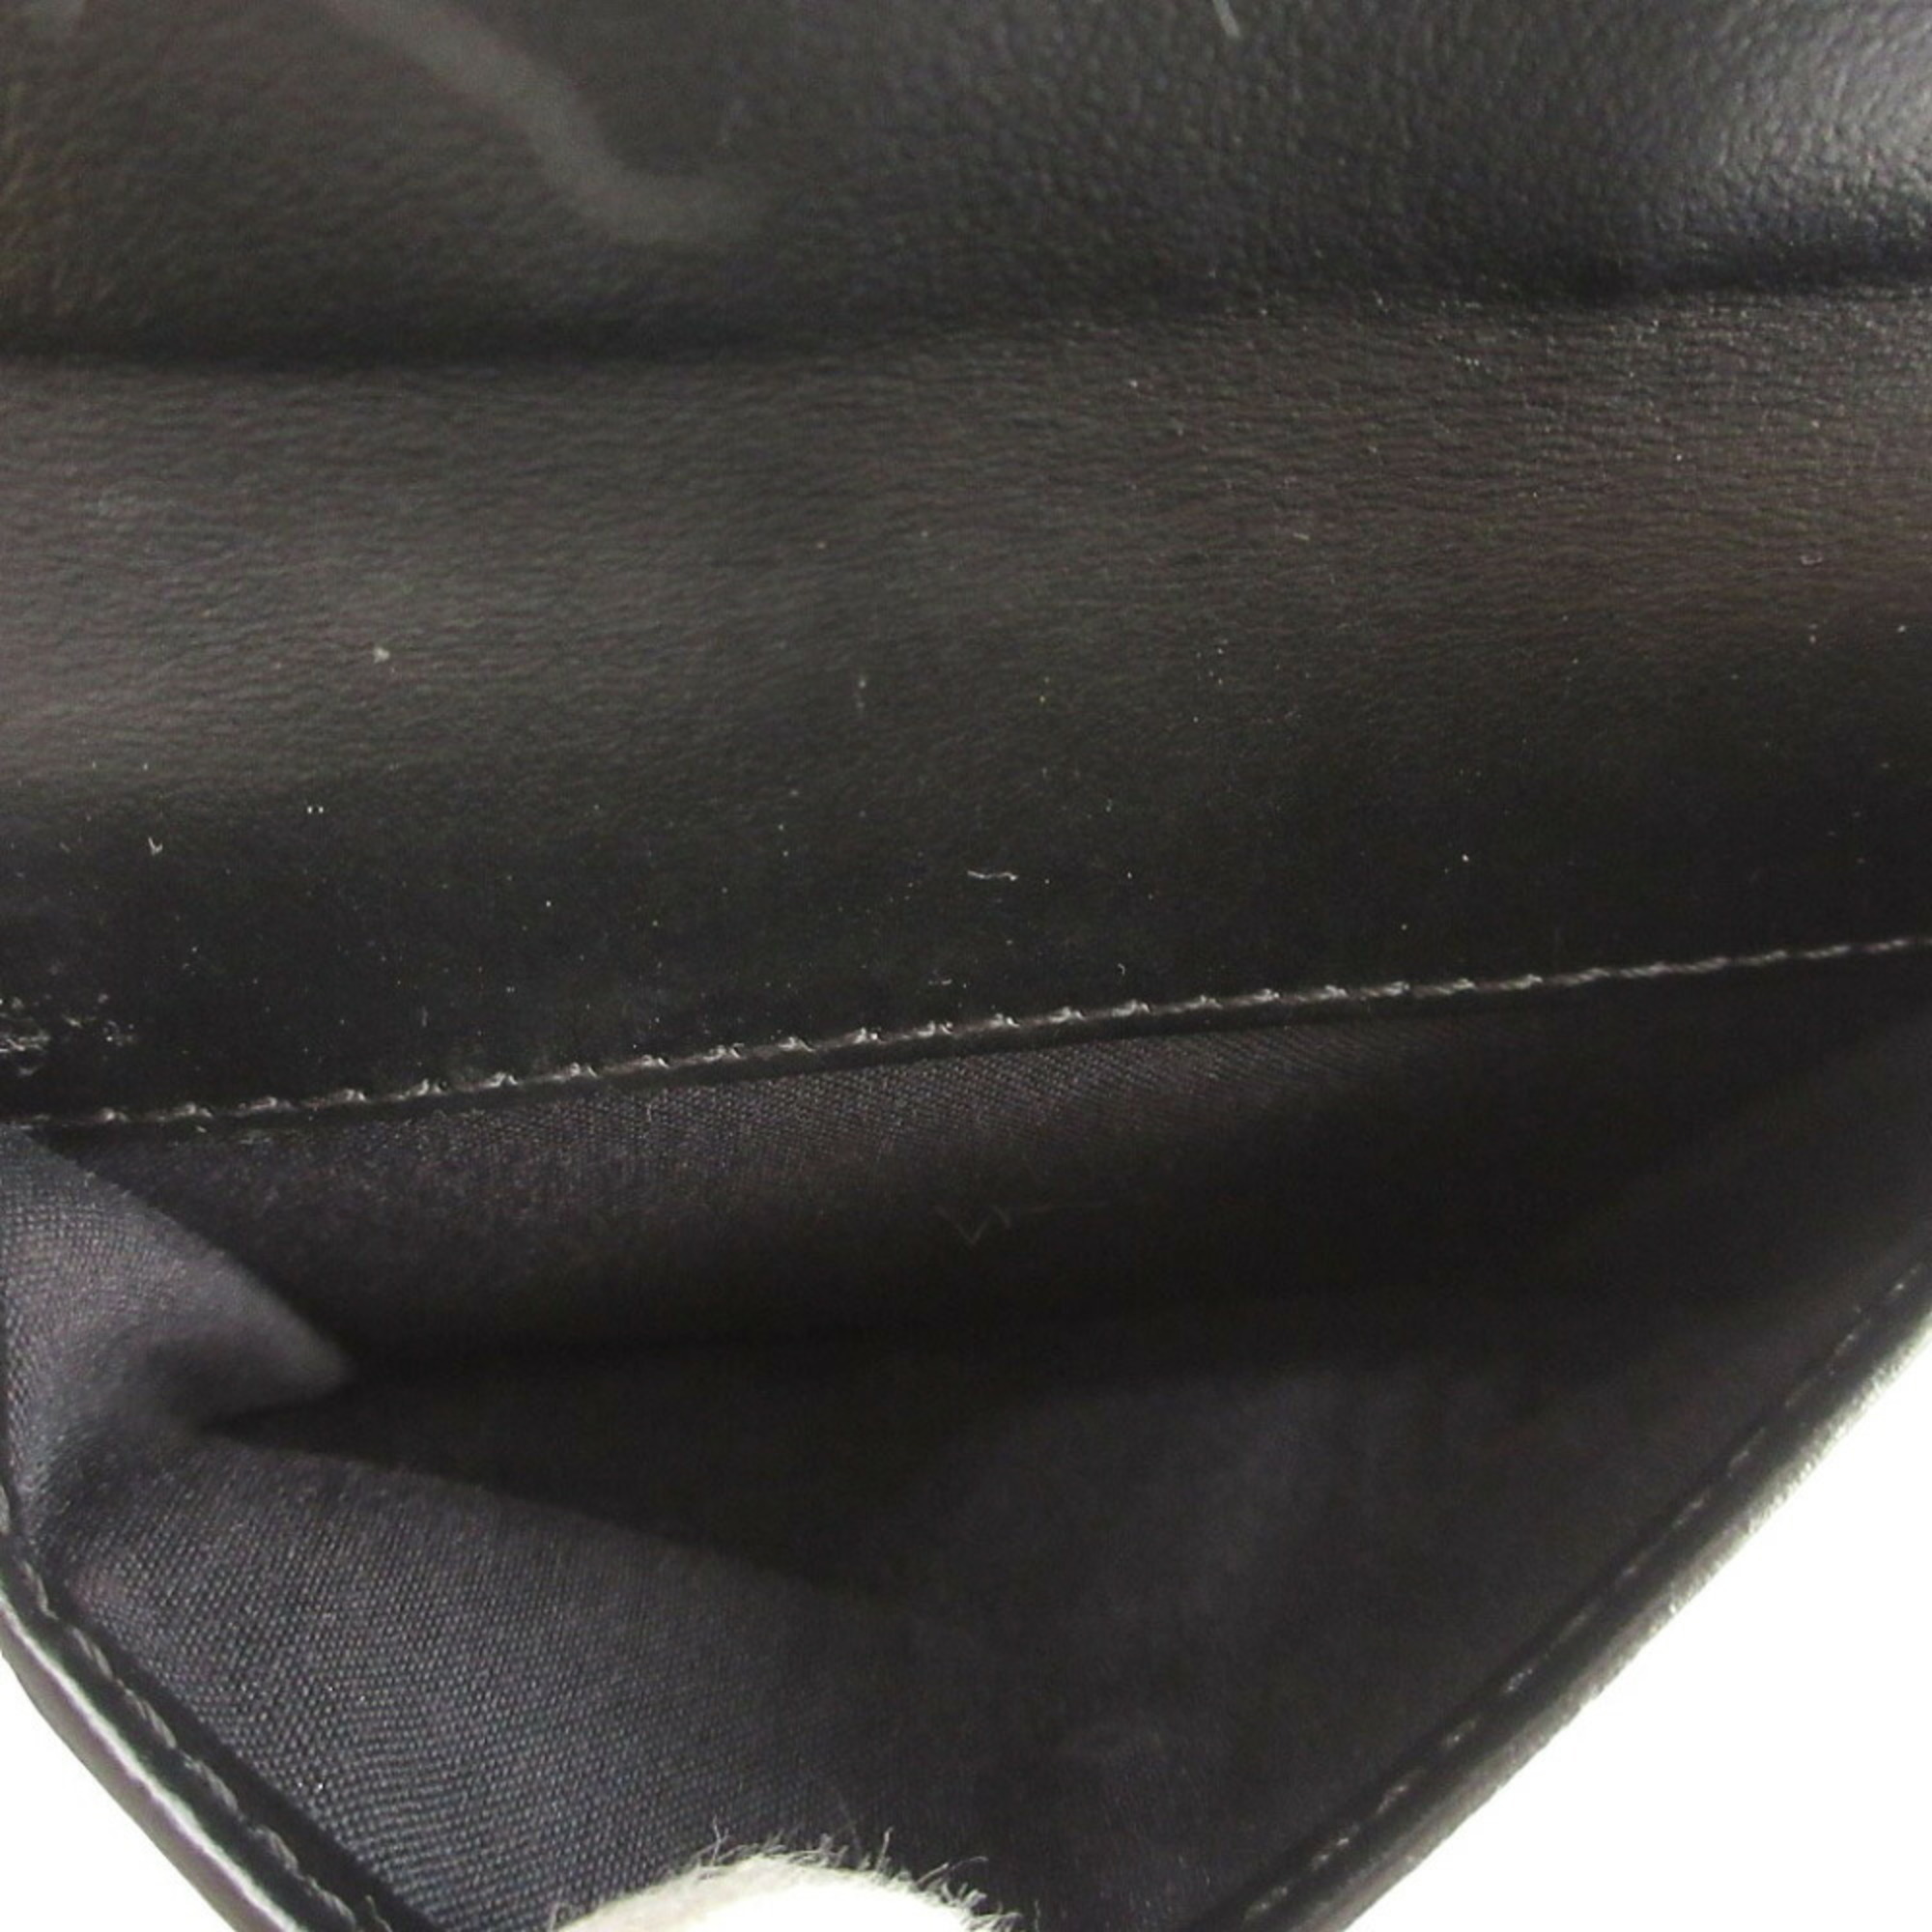 Fendi F is 8M0387 Leather Black Bifold Wallet